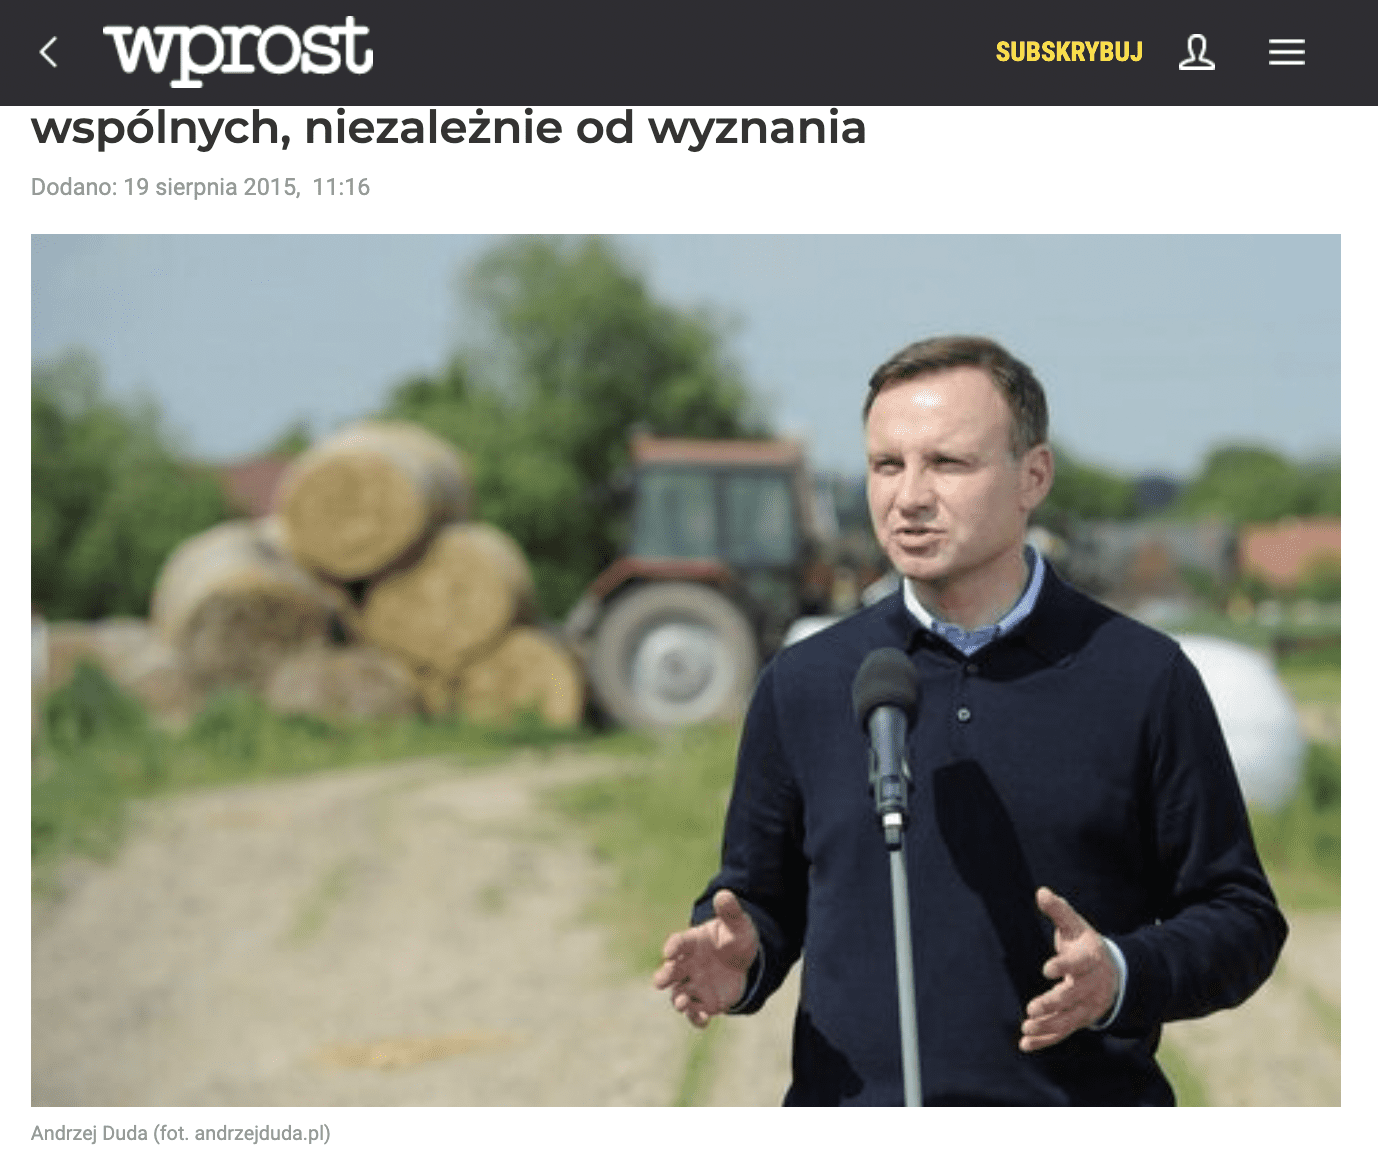 Zrzut ekranu z serwisu Wprost.pl. Na zdjęciu widzimy prezydenta Andrzeja Dudę.